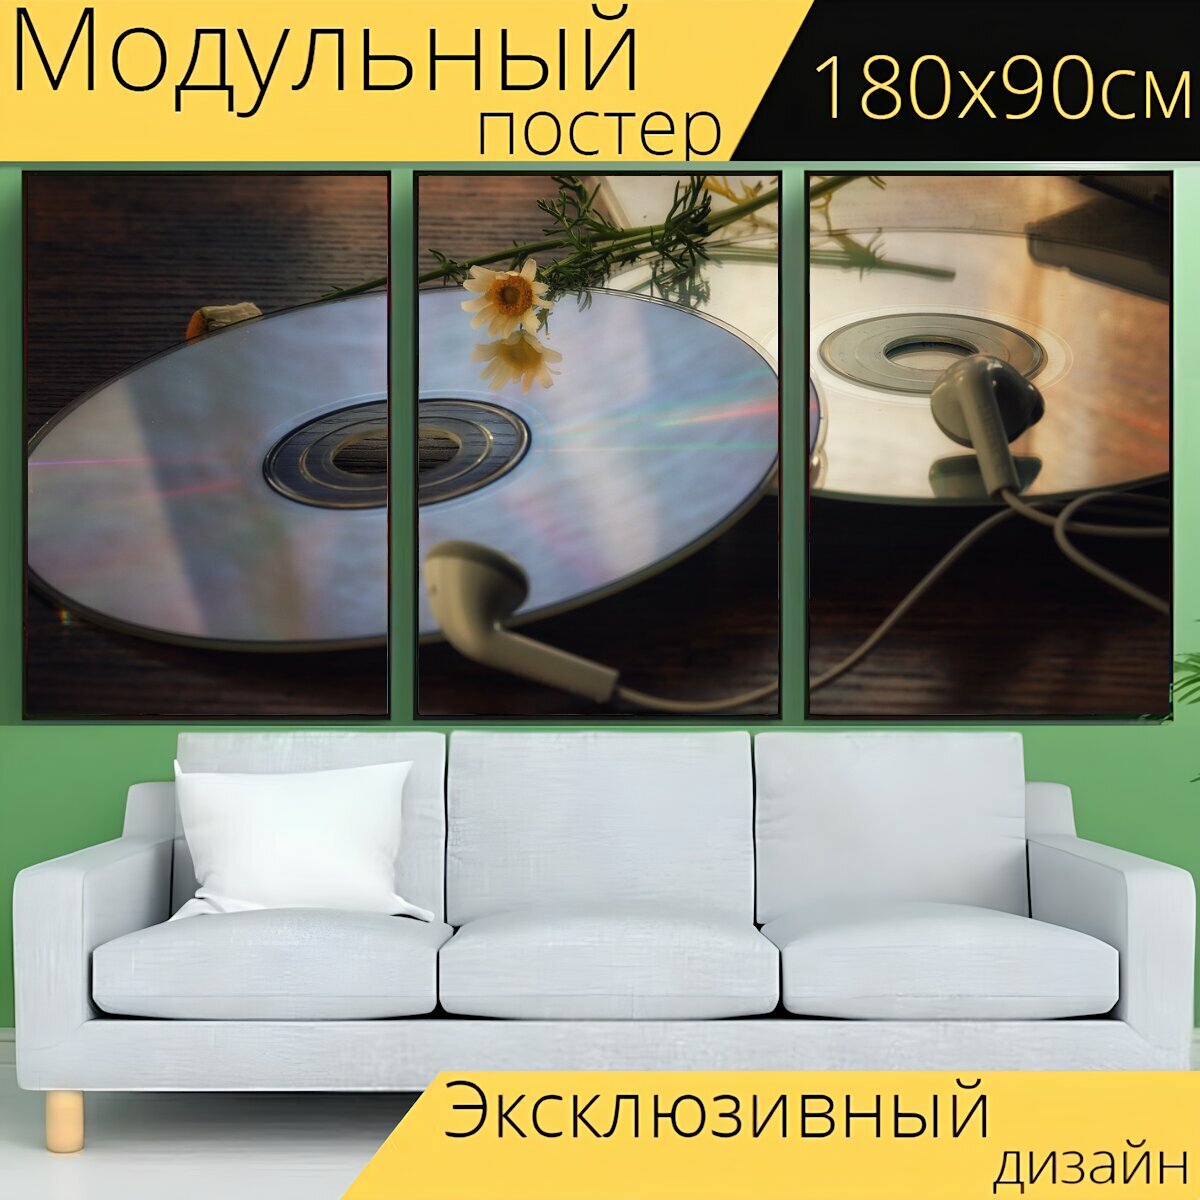 Модульный постер "Музыка, дискотека, компакт диск" 180 x 90 см. для интерьера